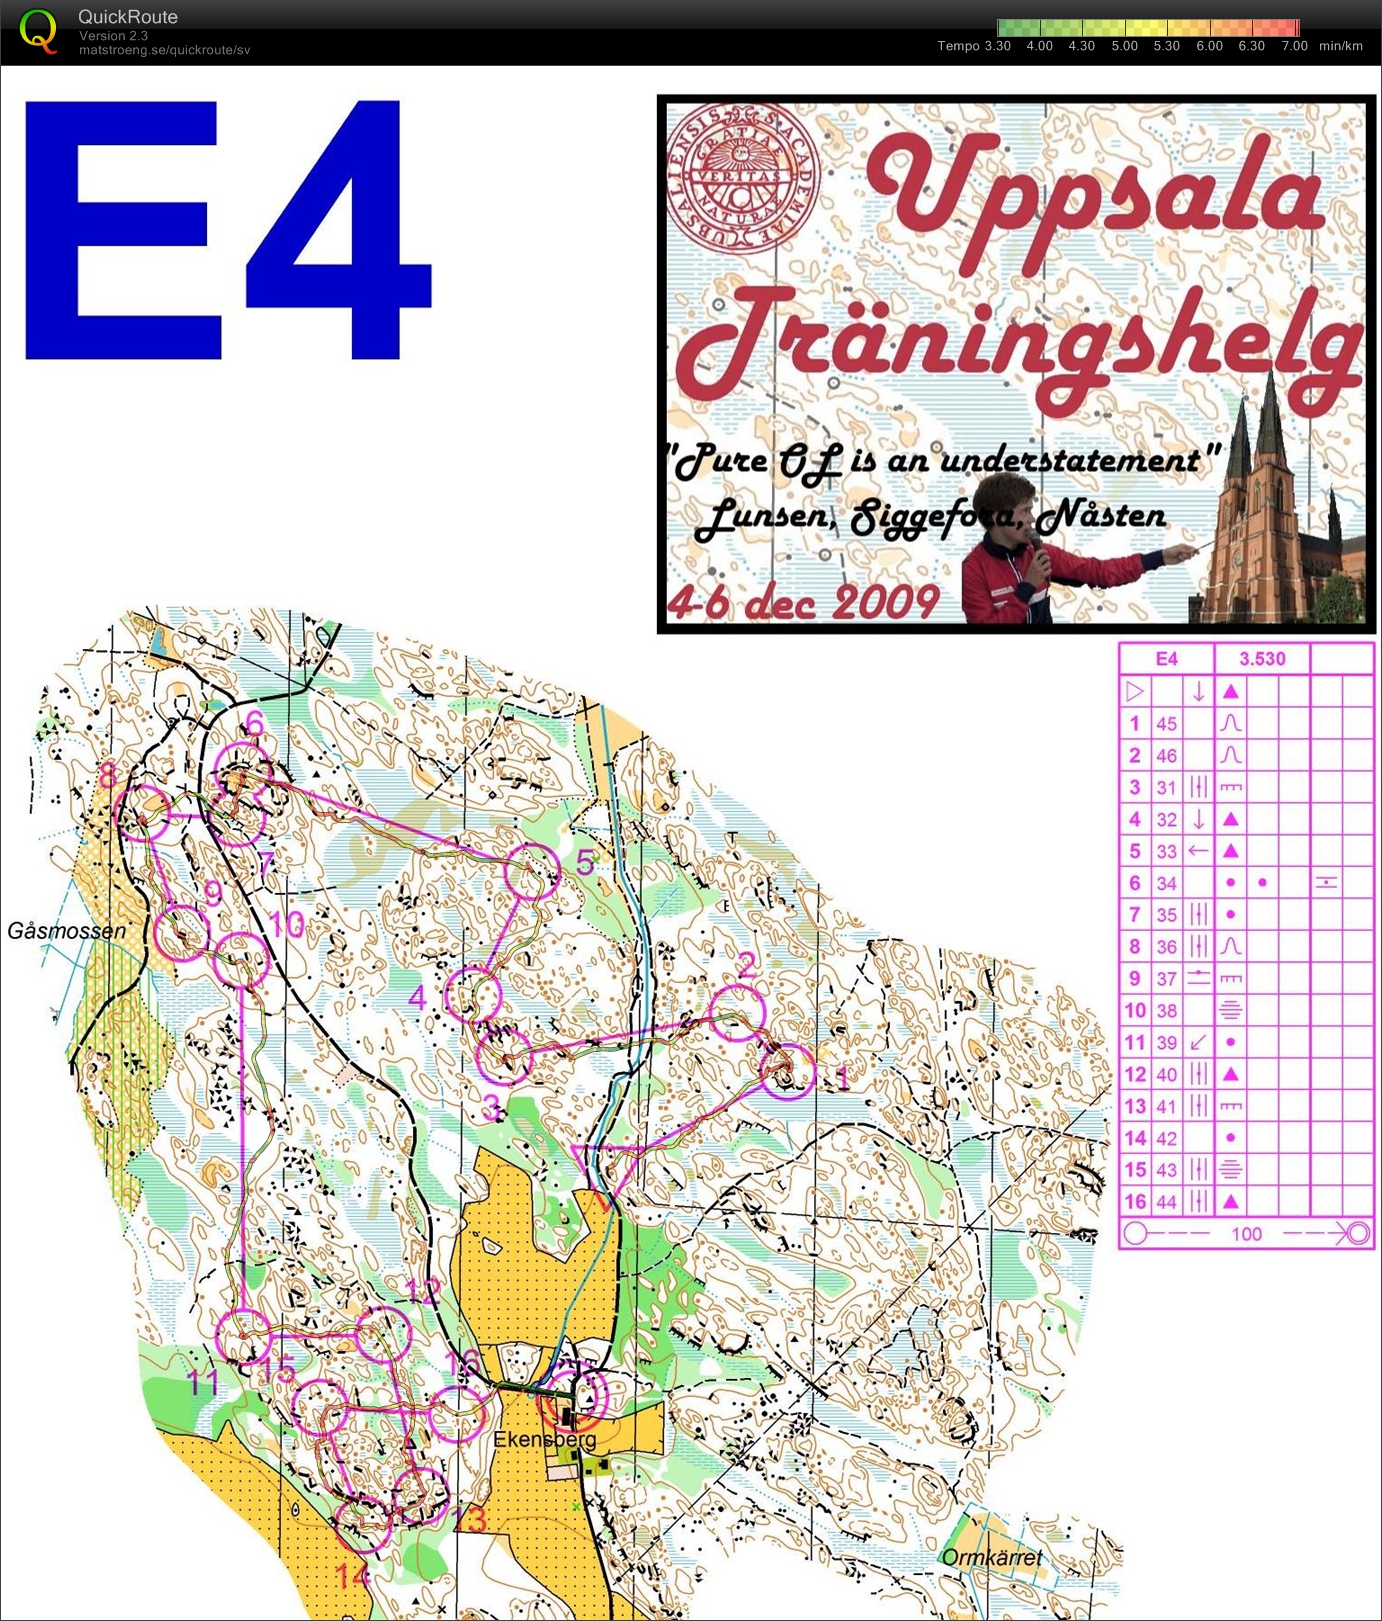 Uppsala träningshelg - Medel Ekensberg (05/12/2009)